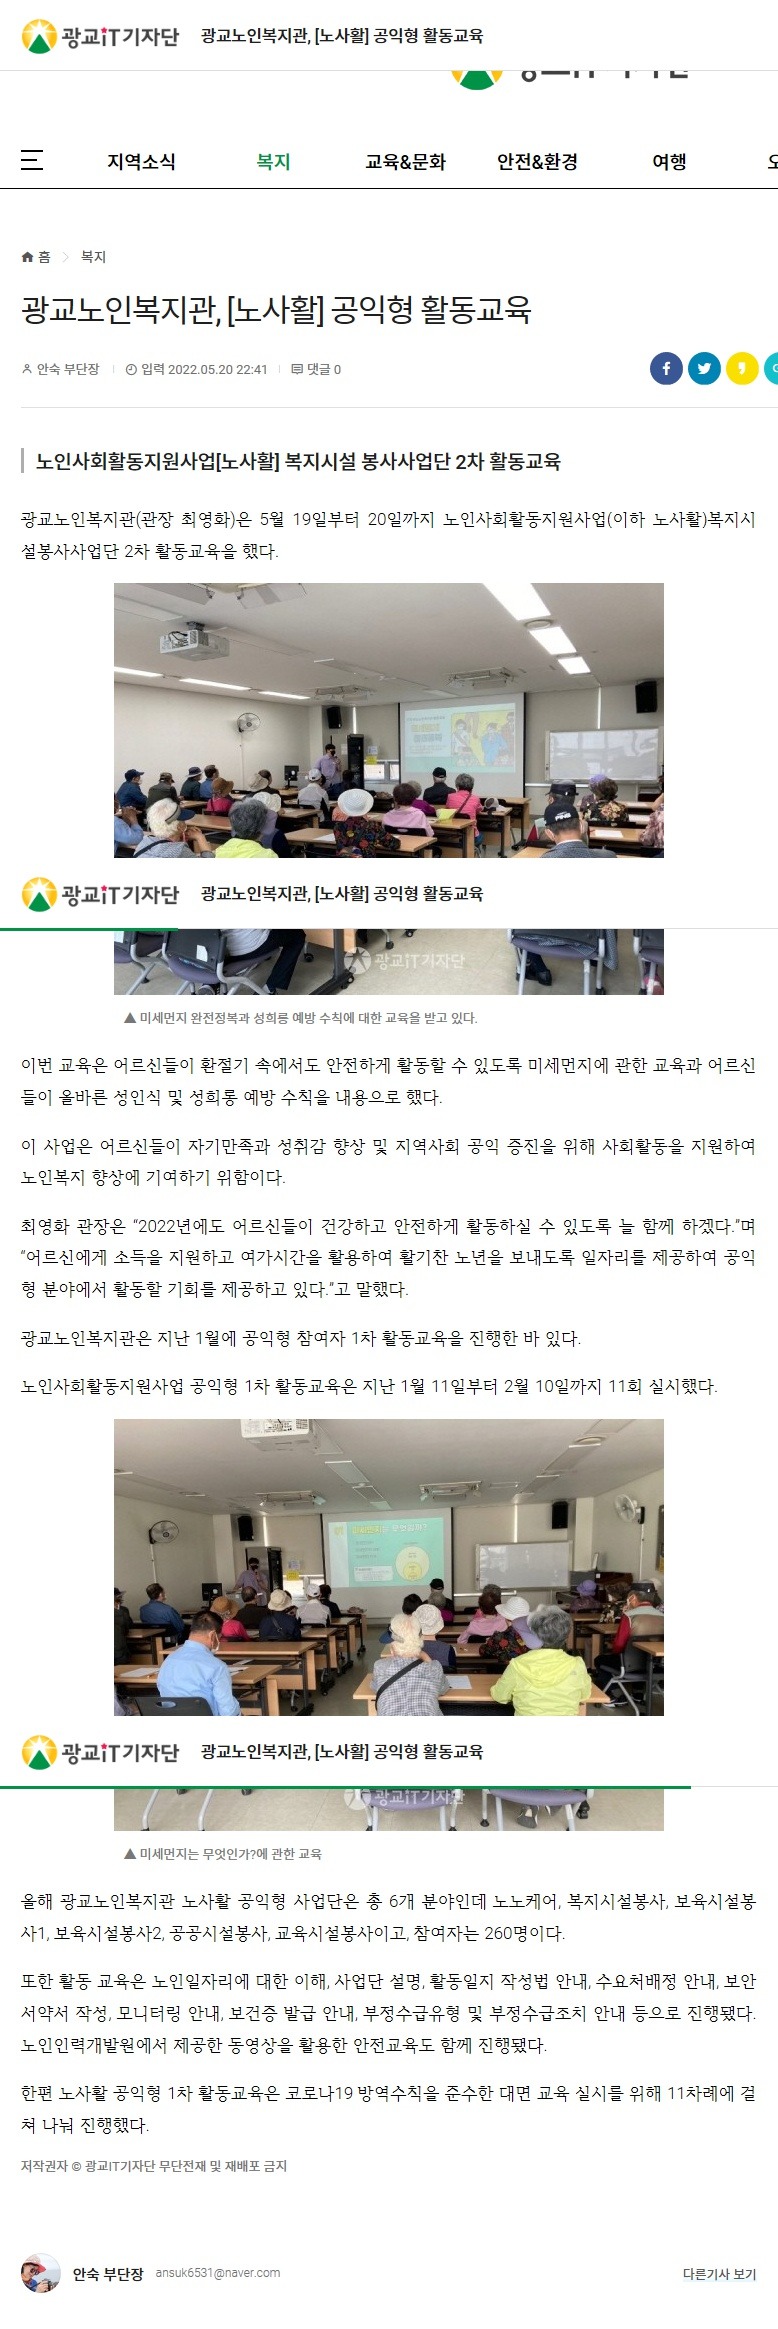 광교노인복지관, 노사활 공익형 활동교육.jpg